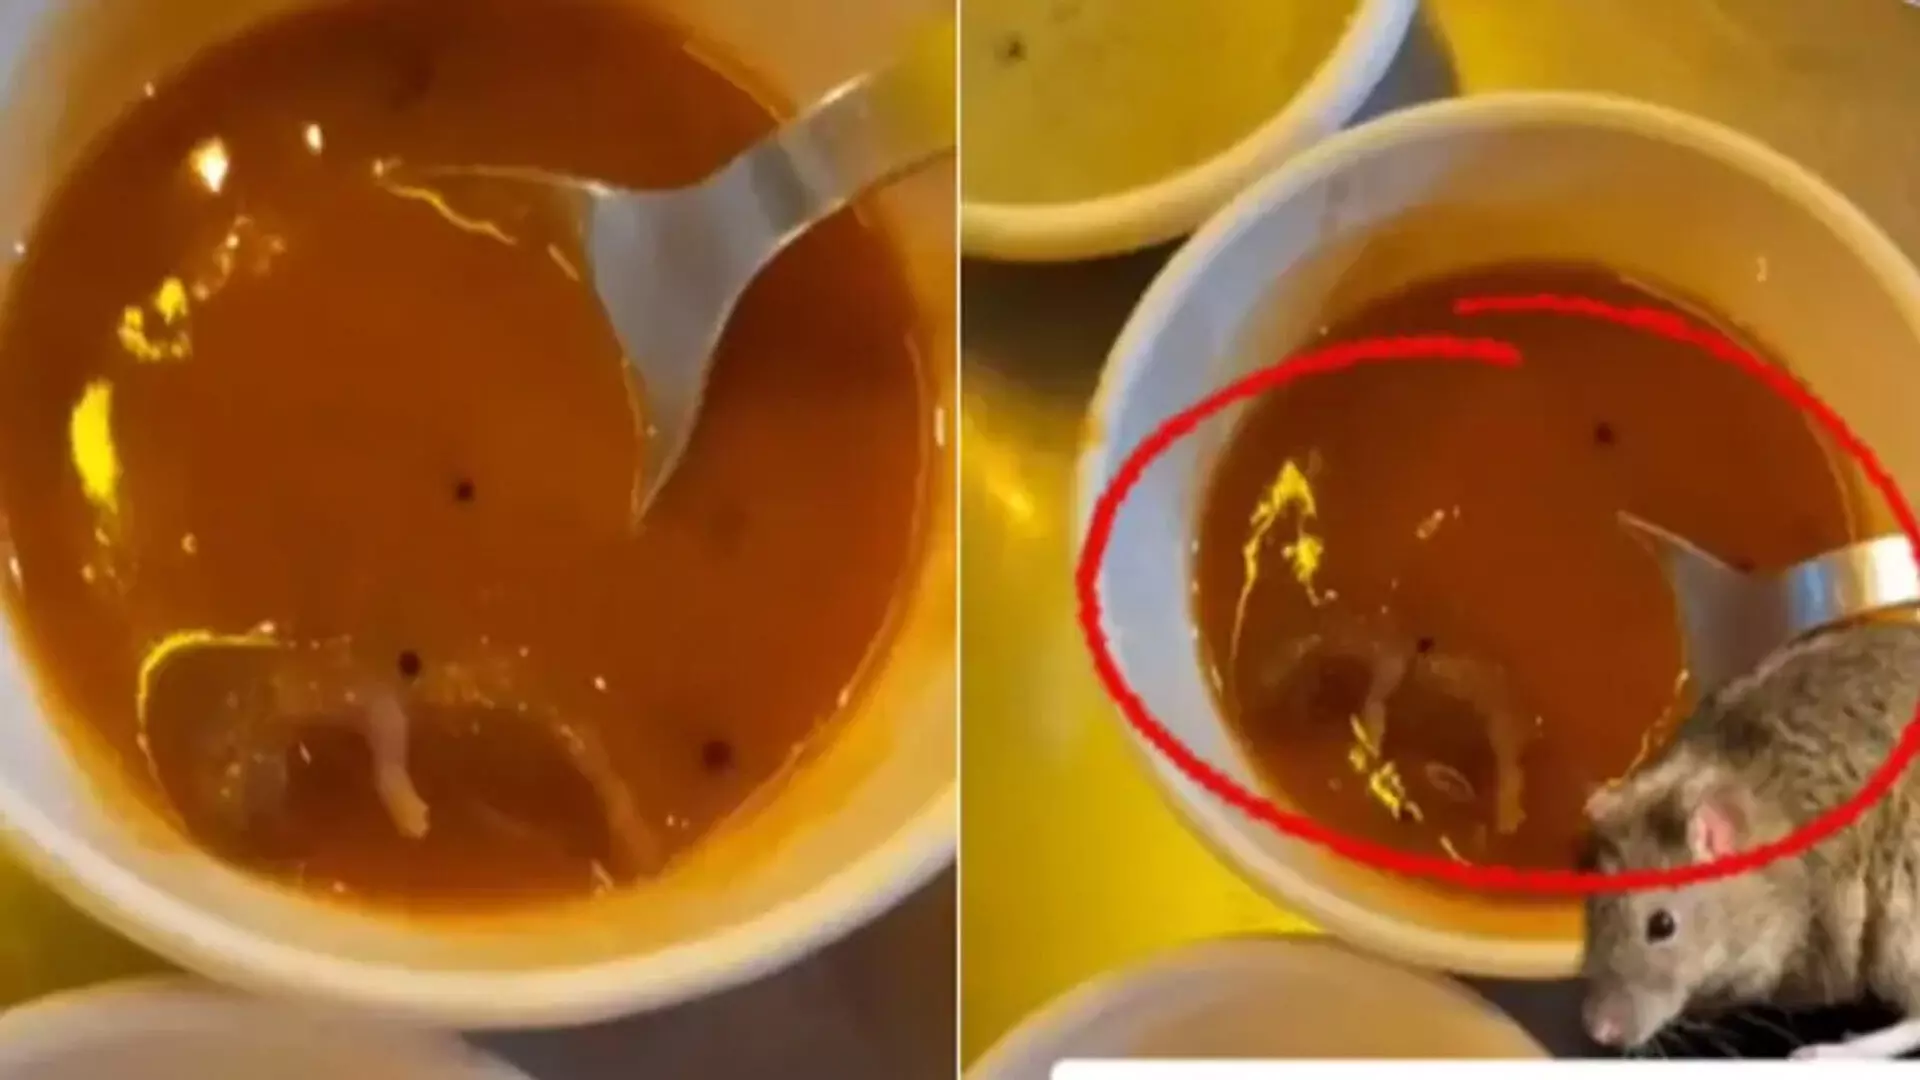 Shocking video: अहमदाबाद के रेस्टोरेंट में सांभर में मिला मरा हुआ चूहा, देखें VIDEO...